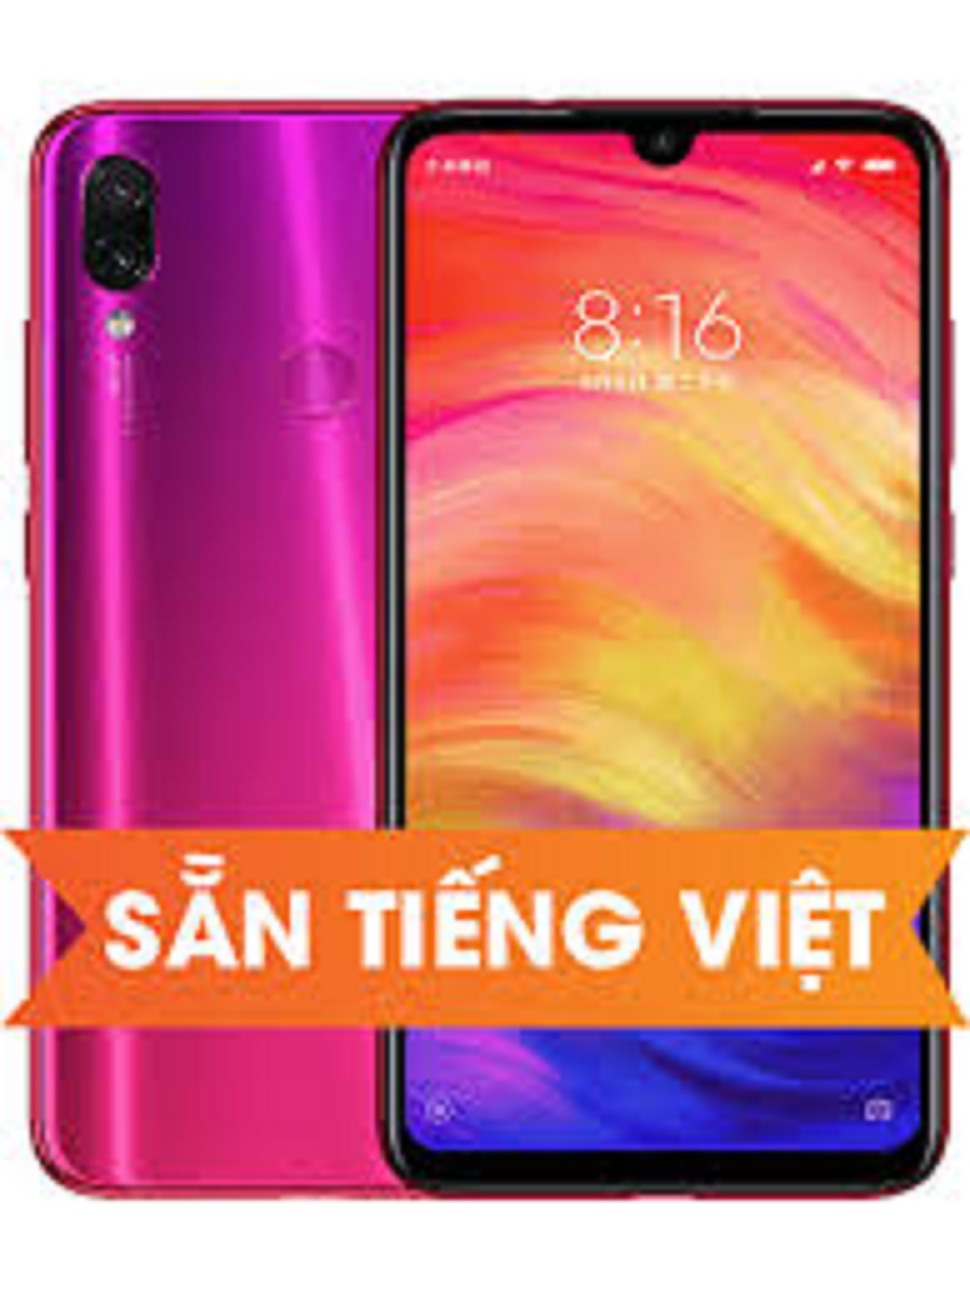 [ GIẢM GIÁ SIÊU SỐC ] điện thoại Xiaomi Redmi Note 7 2sim (4GB/64GB) mới CHÍNH HÃNG, sẵn Tiếng Việt, SIÊU Camera 48Mp